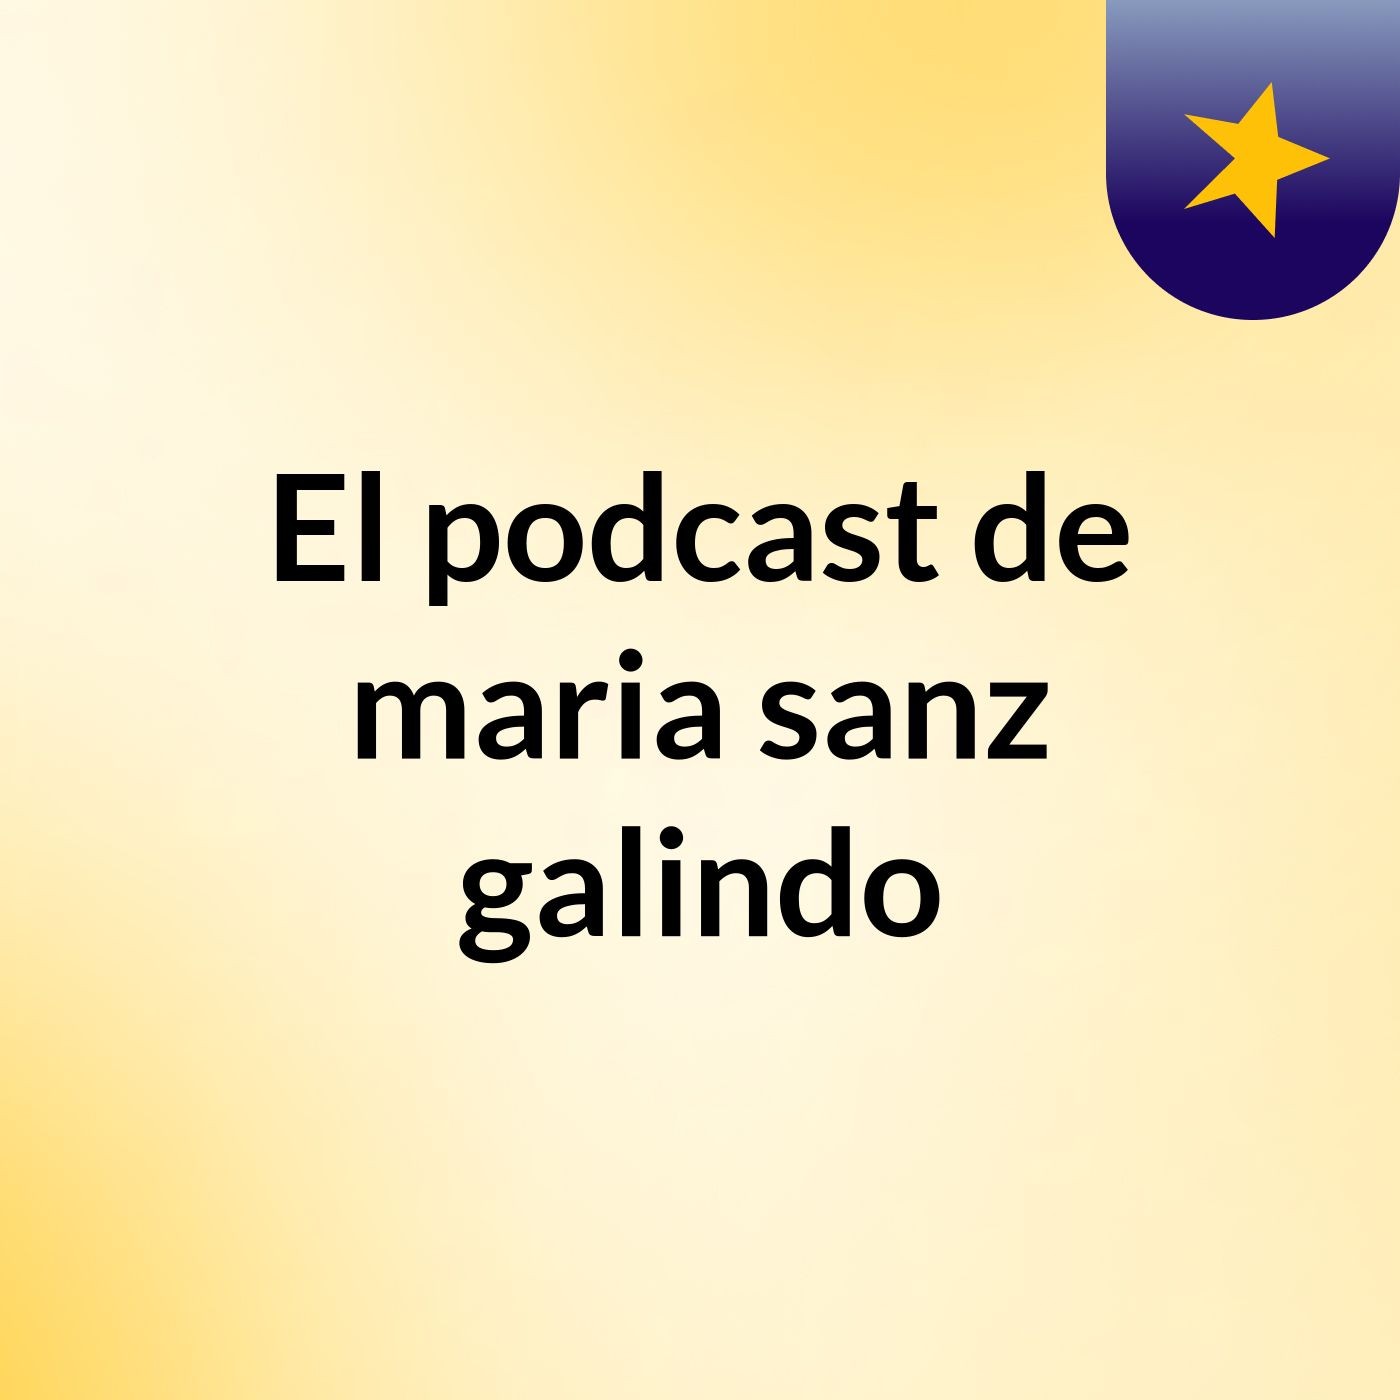 El podcast de maria sanz galindo